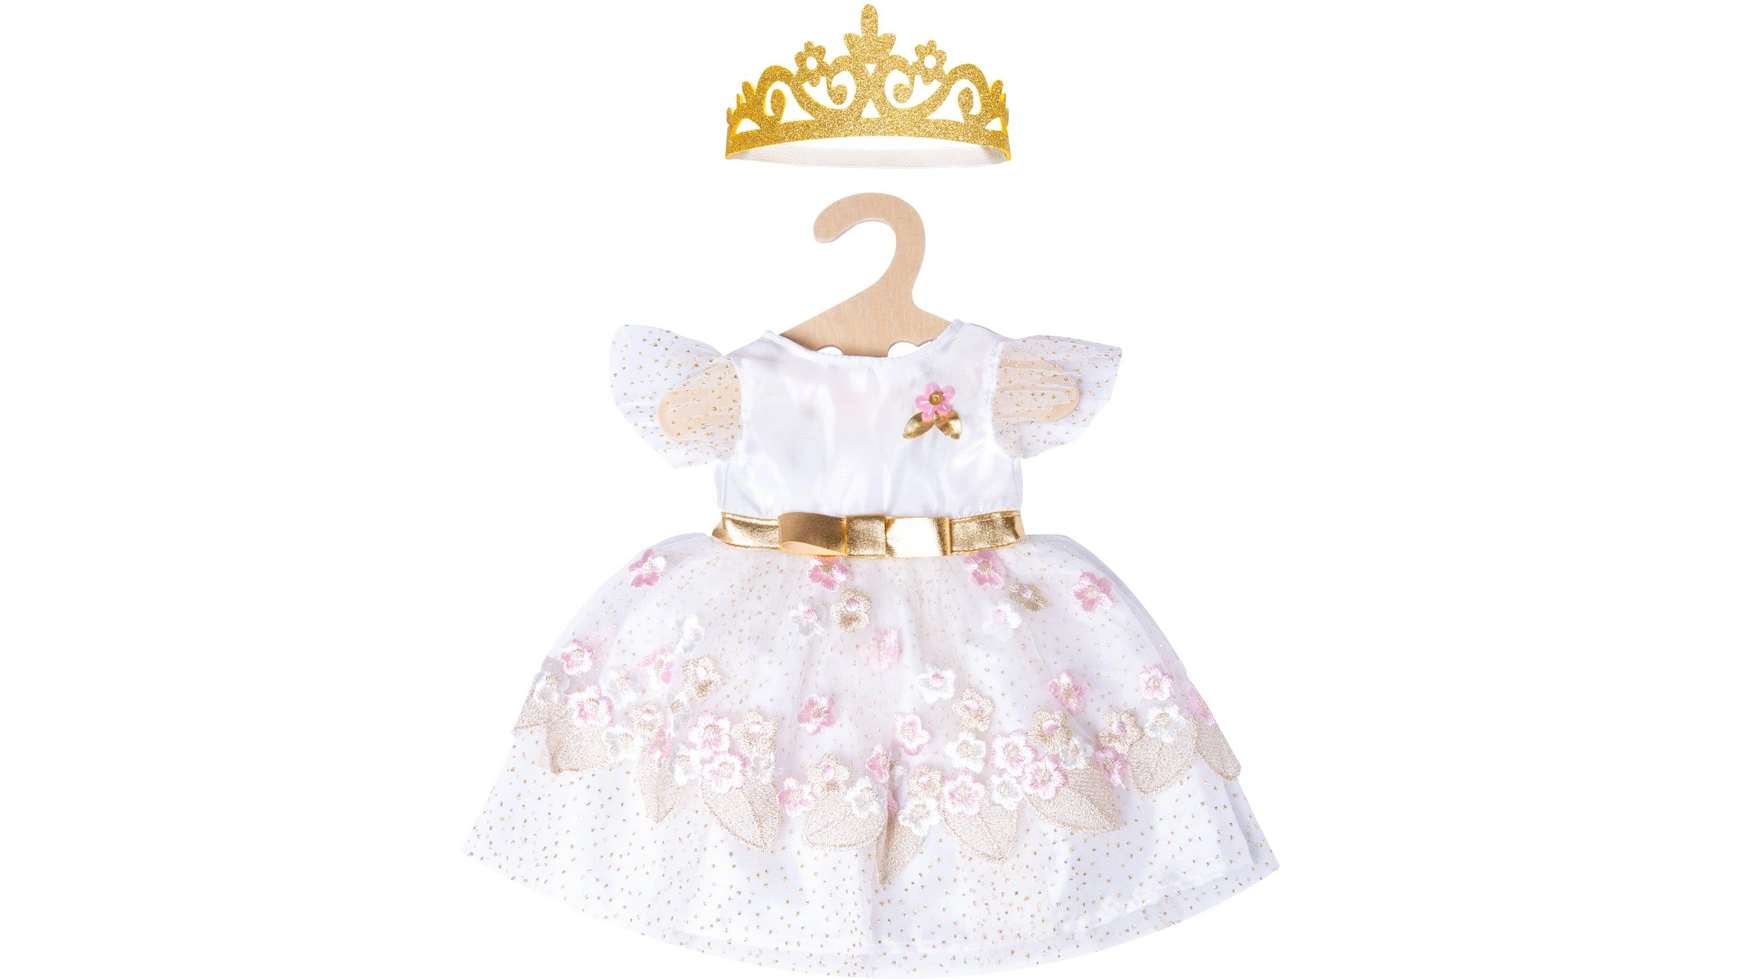 Платье принцессы вишневого цвета с золотой короной, размер 35-45см Heless дворец принцессы